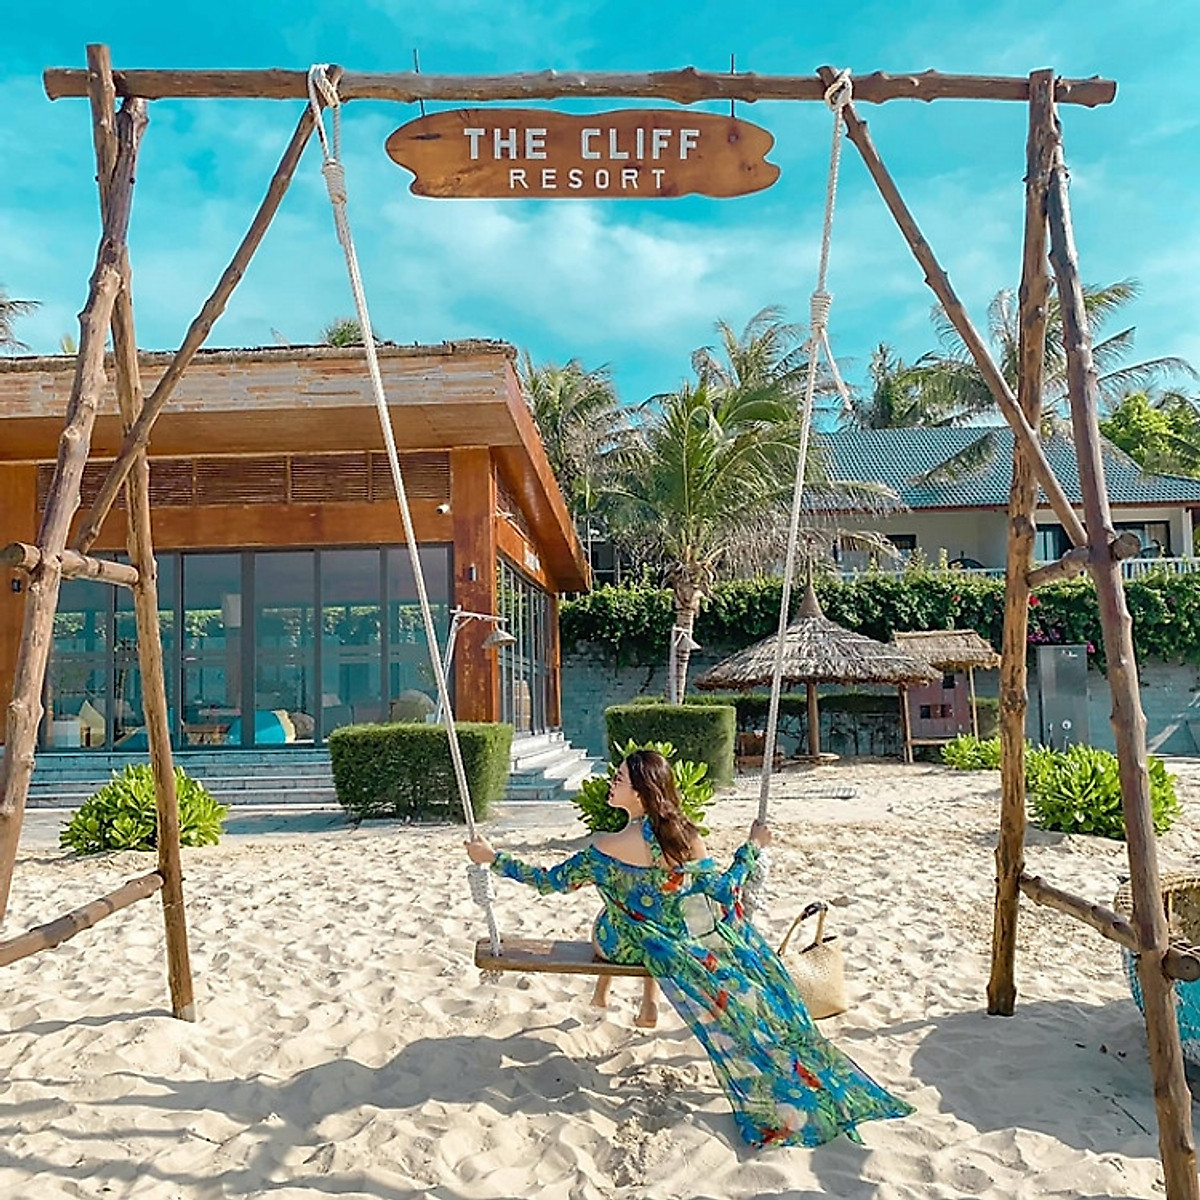 The Cliff Resort 4* Mũi Né - Buffet Sáng Free, Hồ Bơi, Bãi Biển Riêng, Không Gian Xanh Mát, Nghỉ Dưỡng Đẳng Cấp Phan Thiết Và Nhiều Dịch Vụ Hấp Dẫn